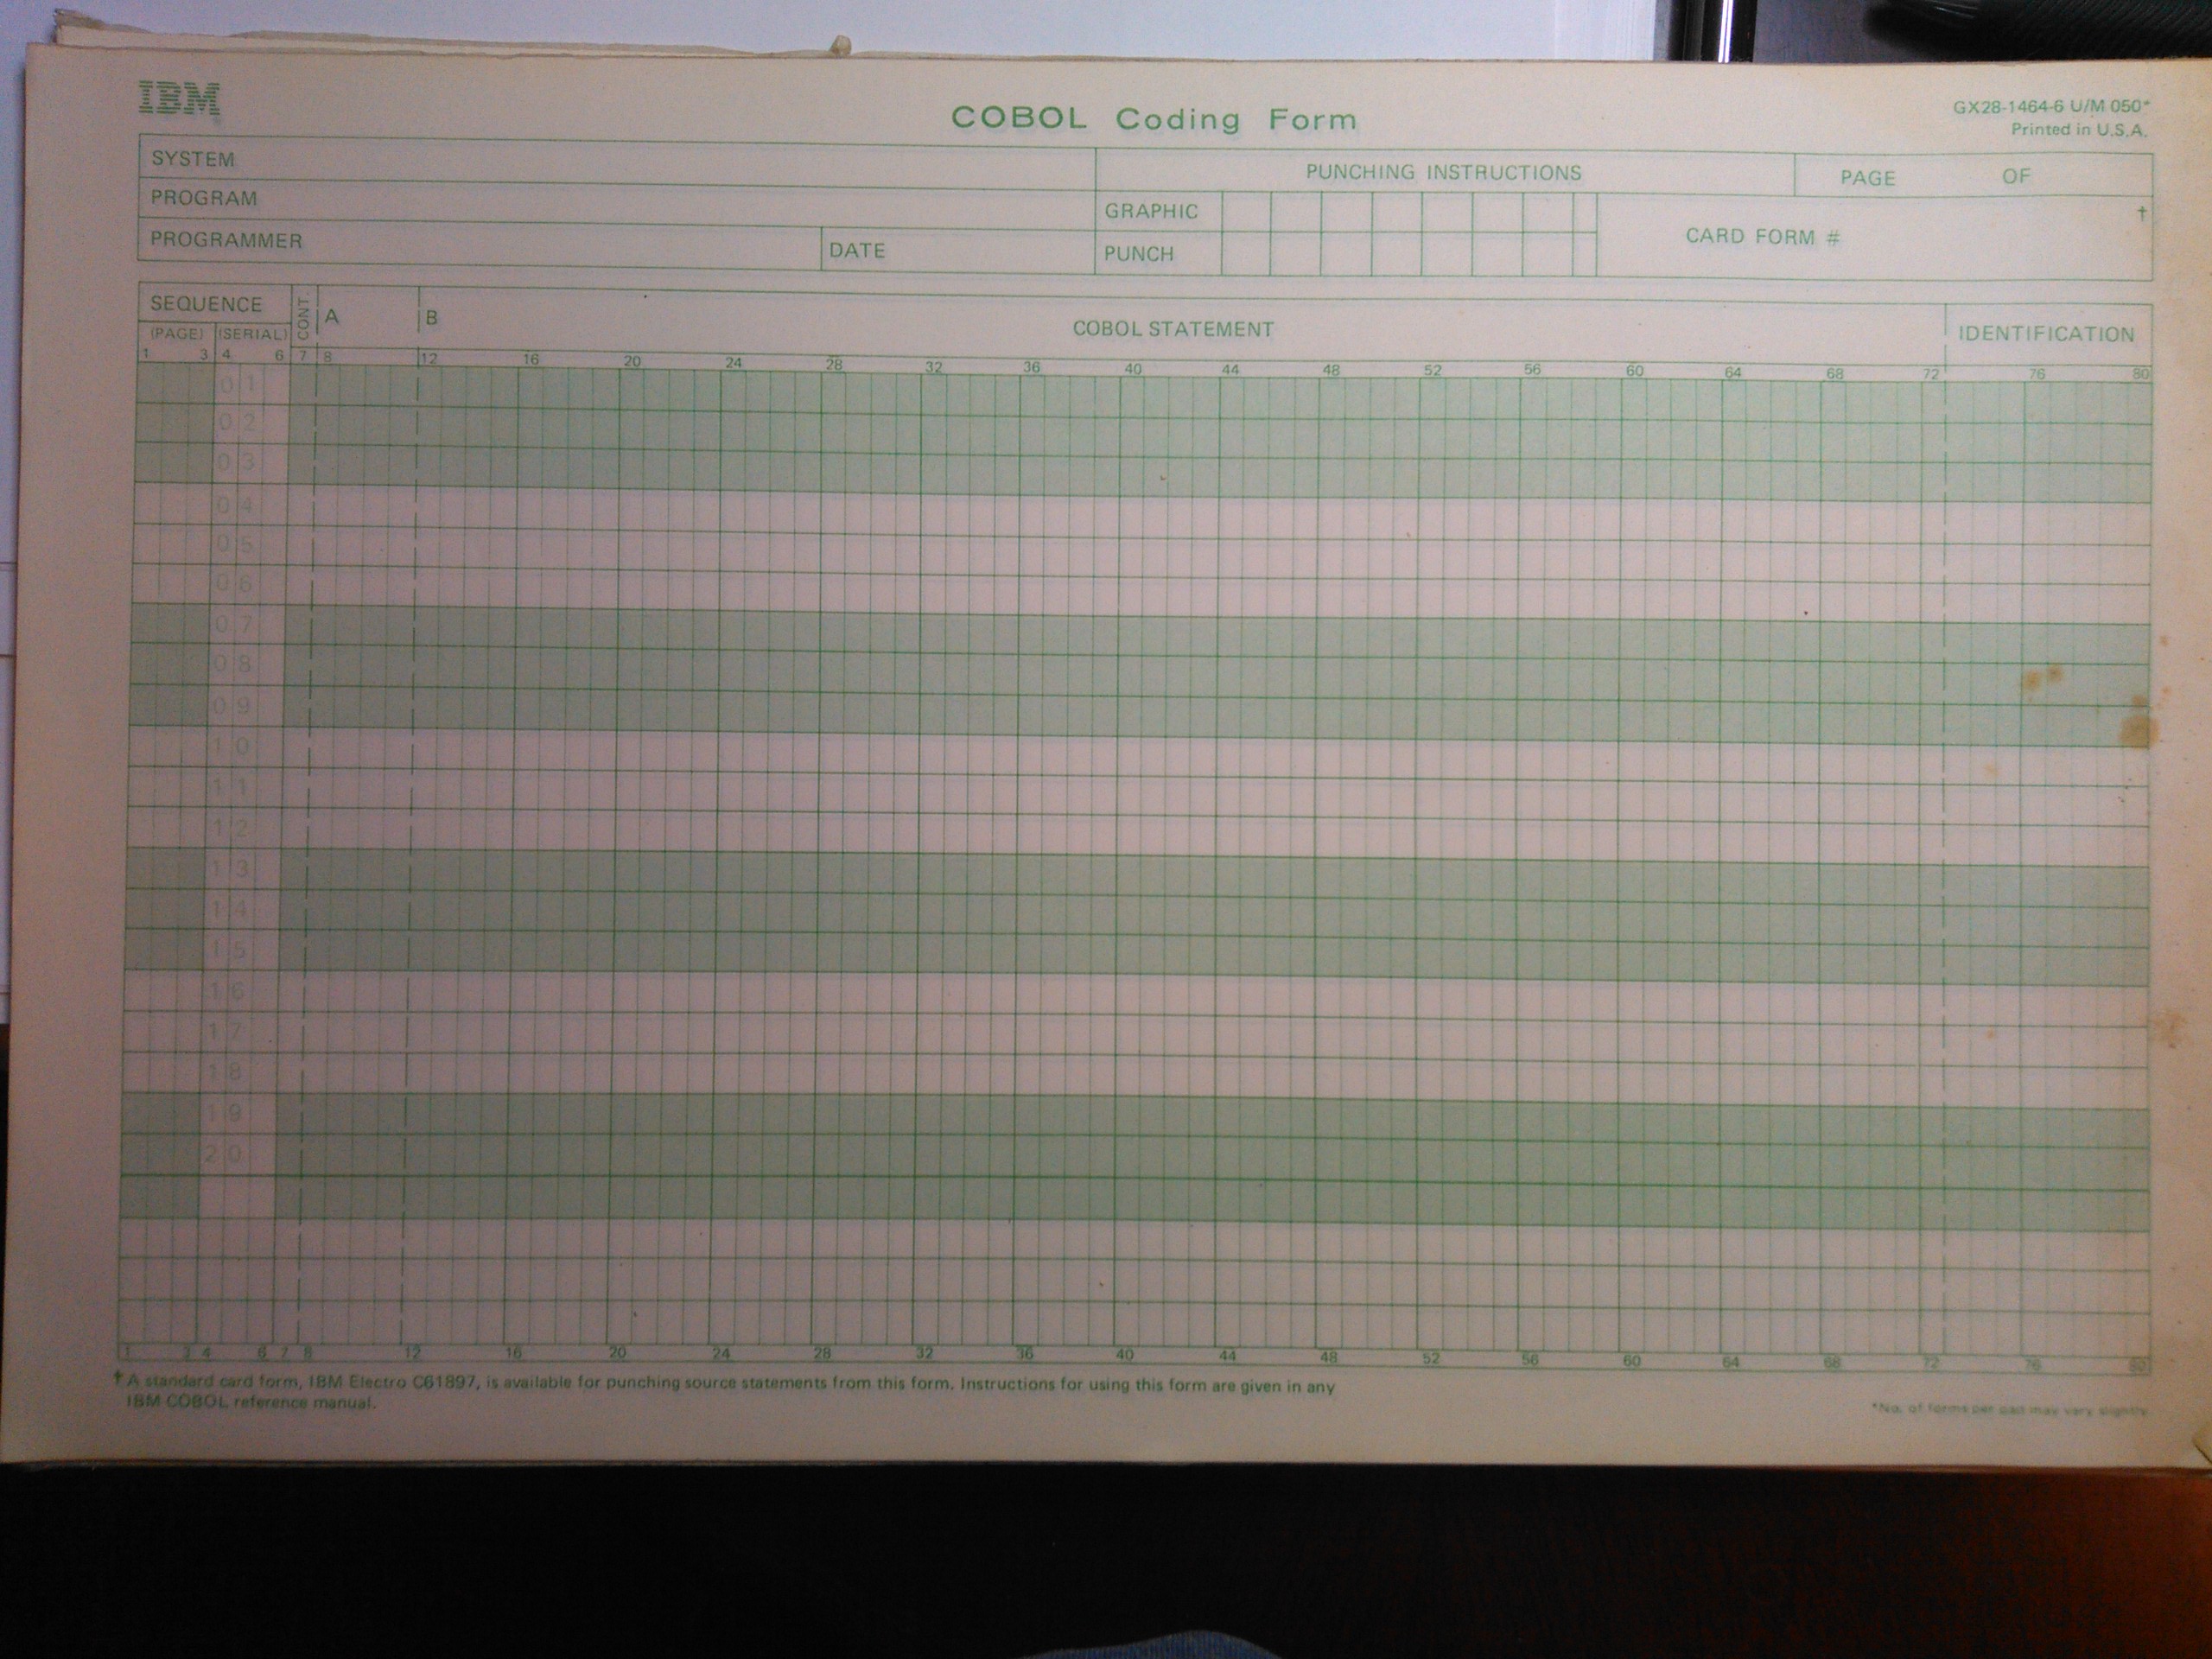 COBOL coding sheet image